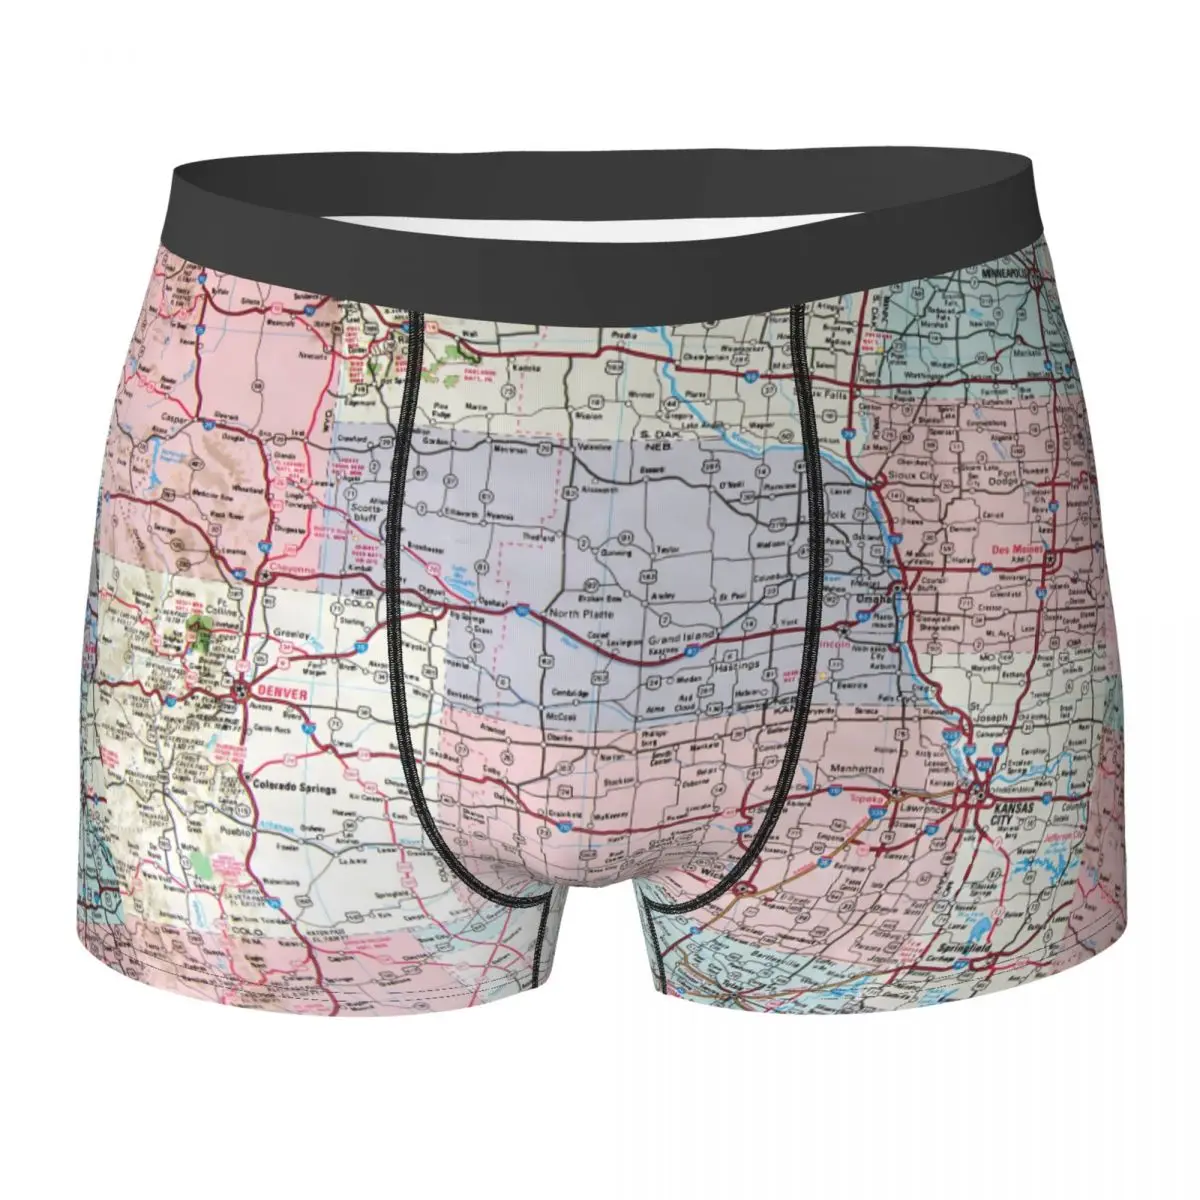 

Нижнее белье USA Midwest Map, высококачественные боксеры с 3D рисунком в стиле ретро, индивидуальные шорты «сделай сам», дышащие мужские трусы большого размера